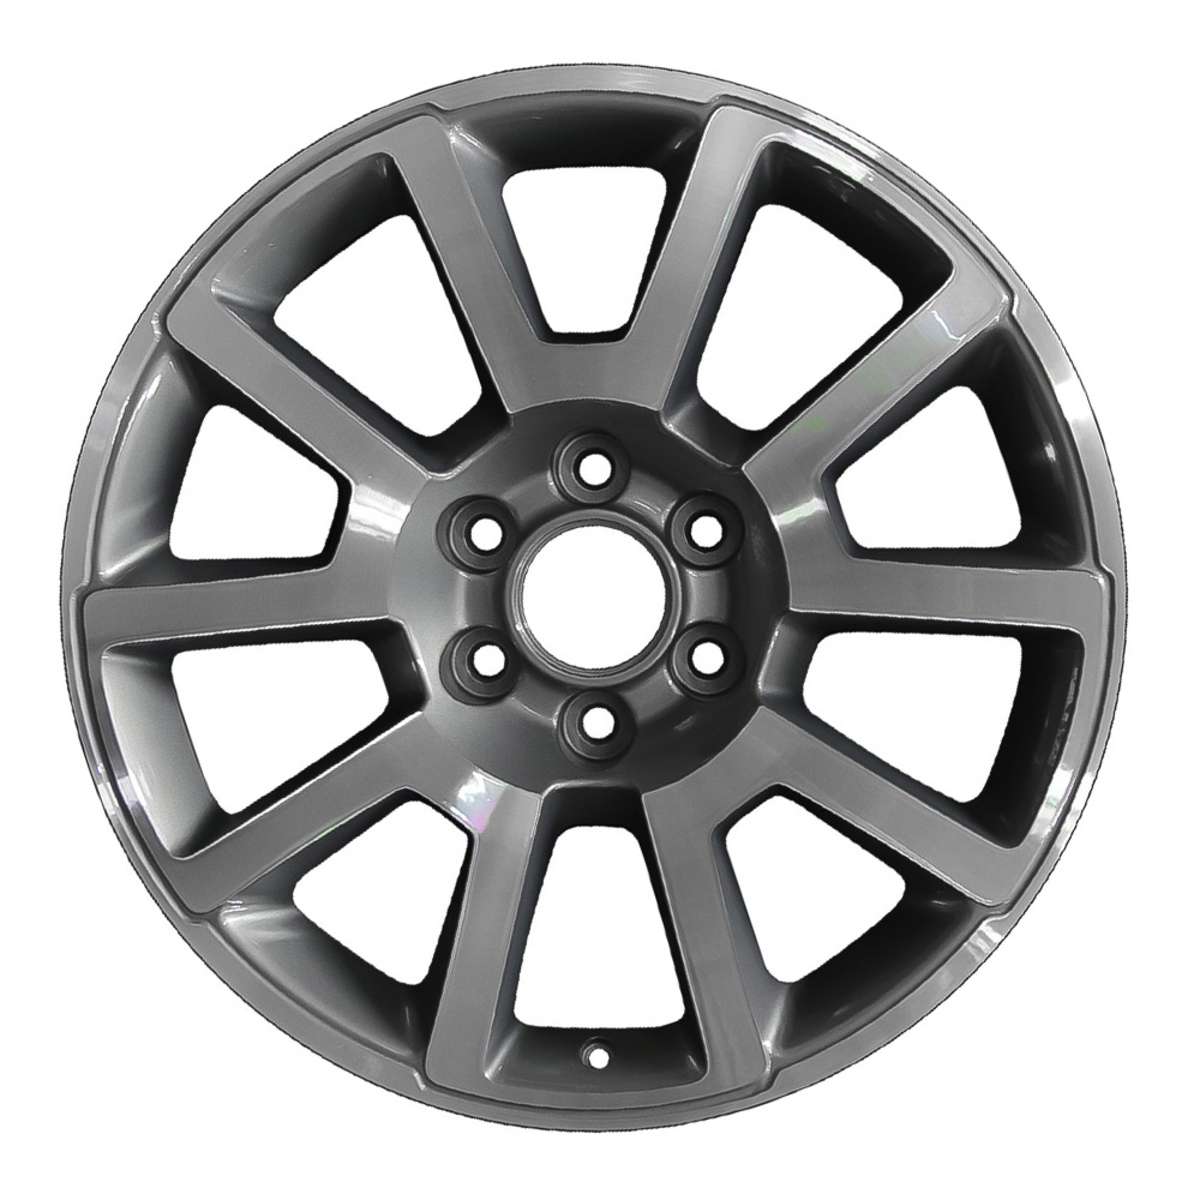 2021 GMC Yukon XL 20" OEM Wheel Rim W5699MC